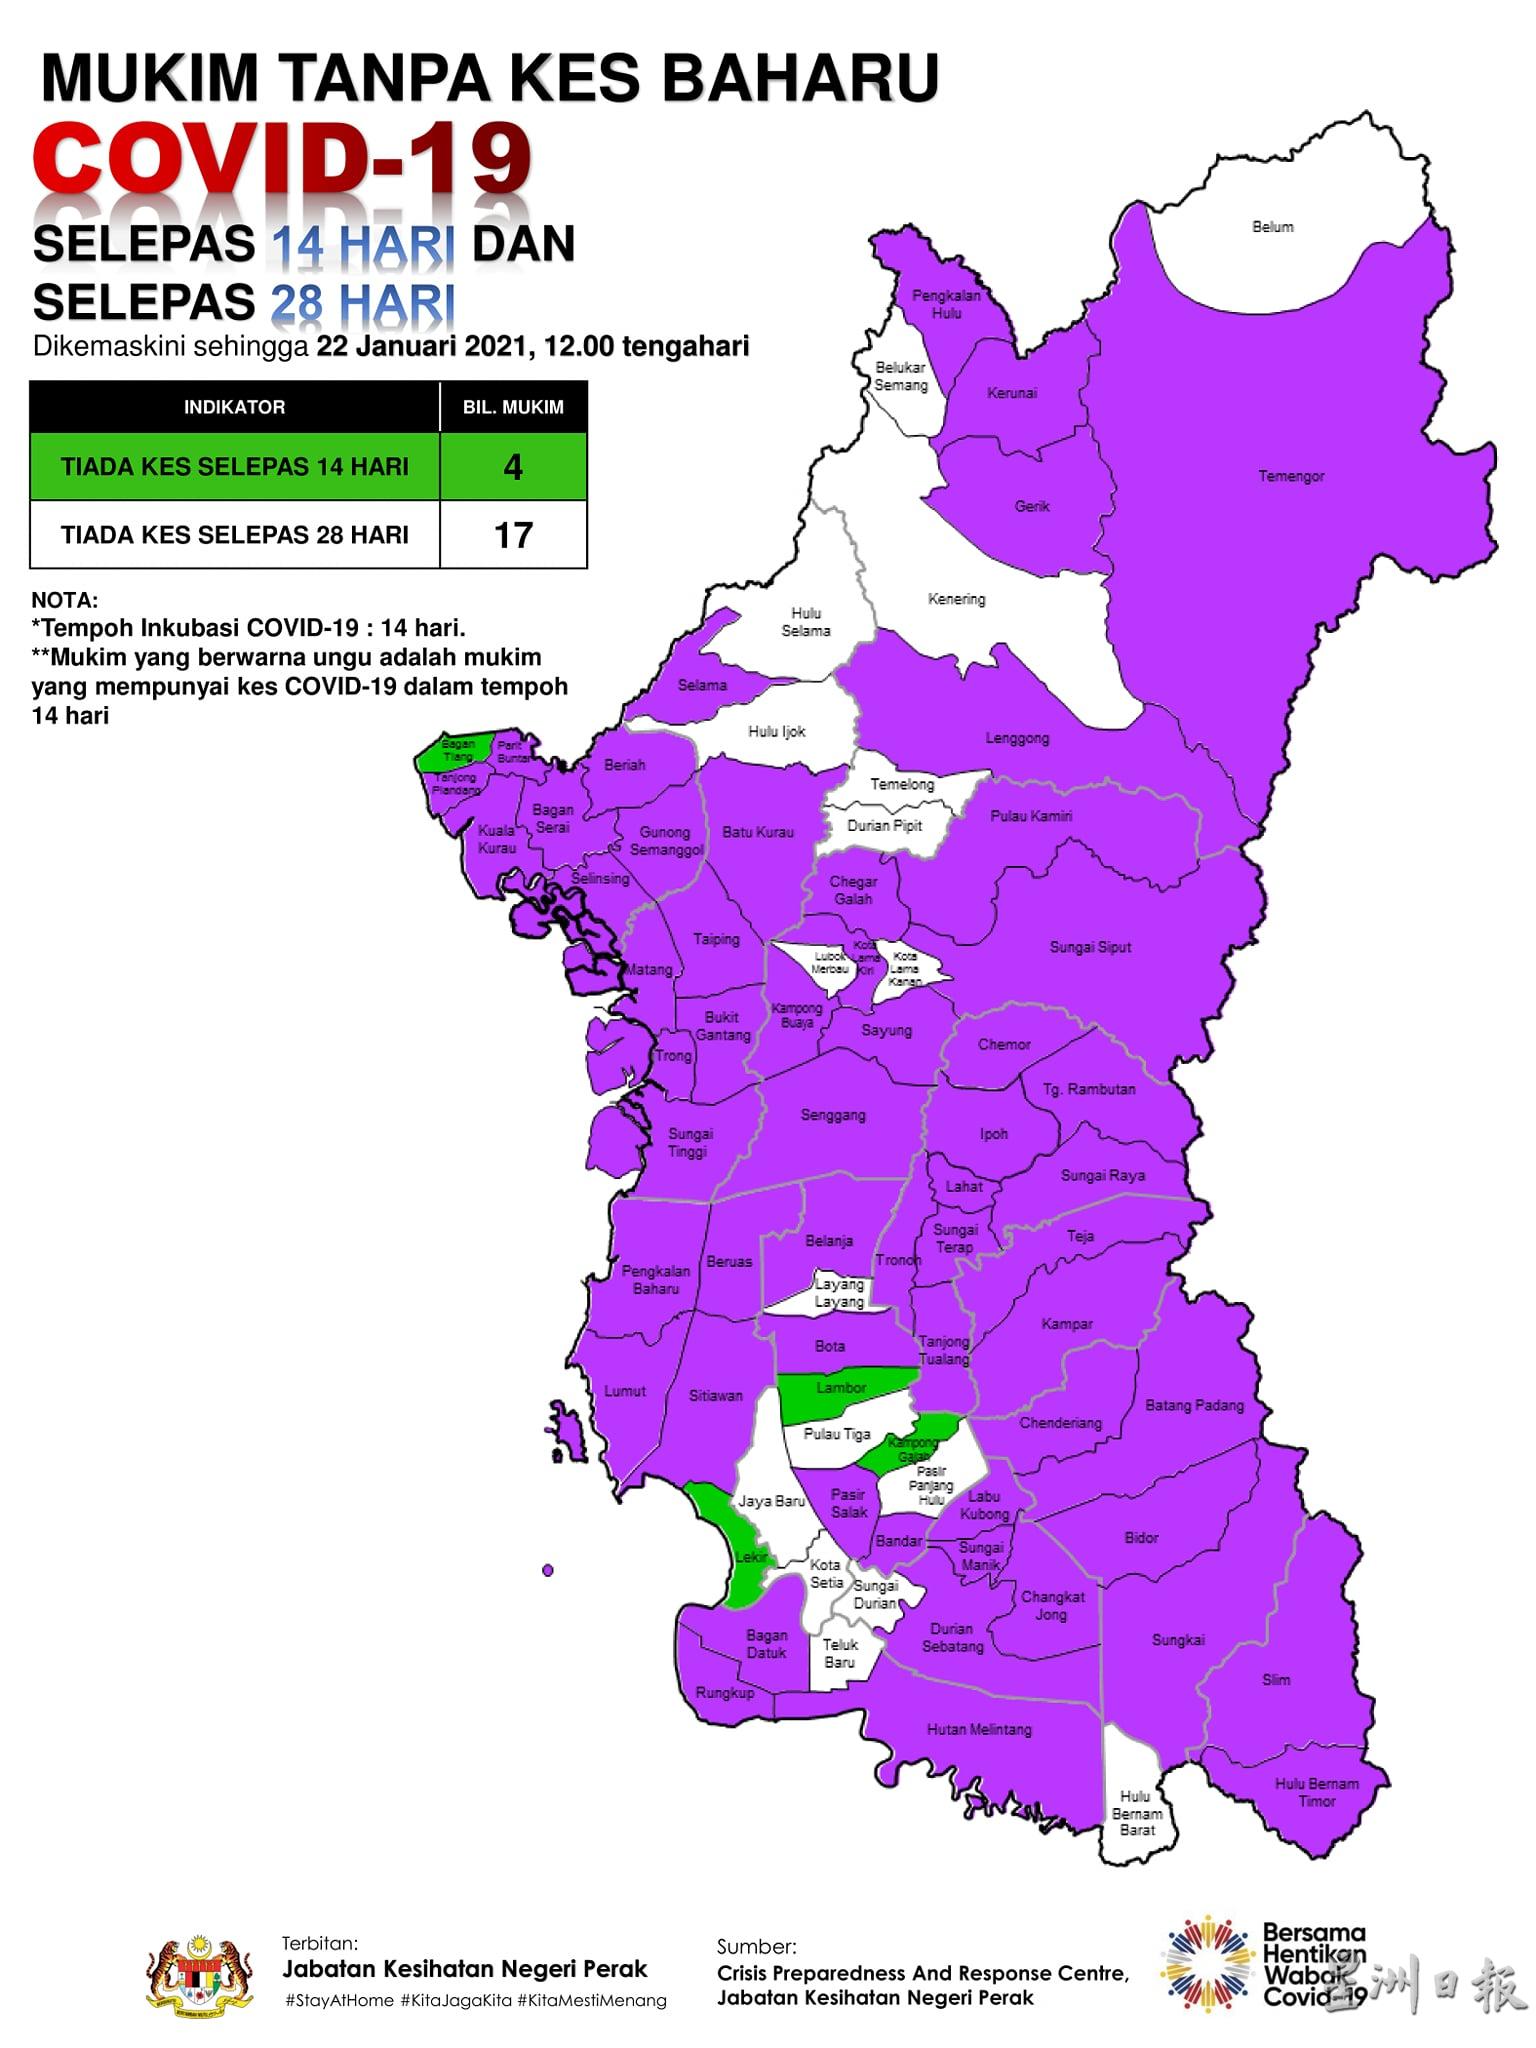 霹州内78个地区中，仅剩17个地区维持冠病白区，而冠病紫区已攀升至57个。